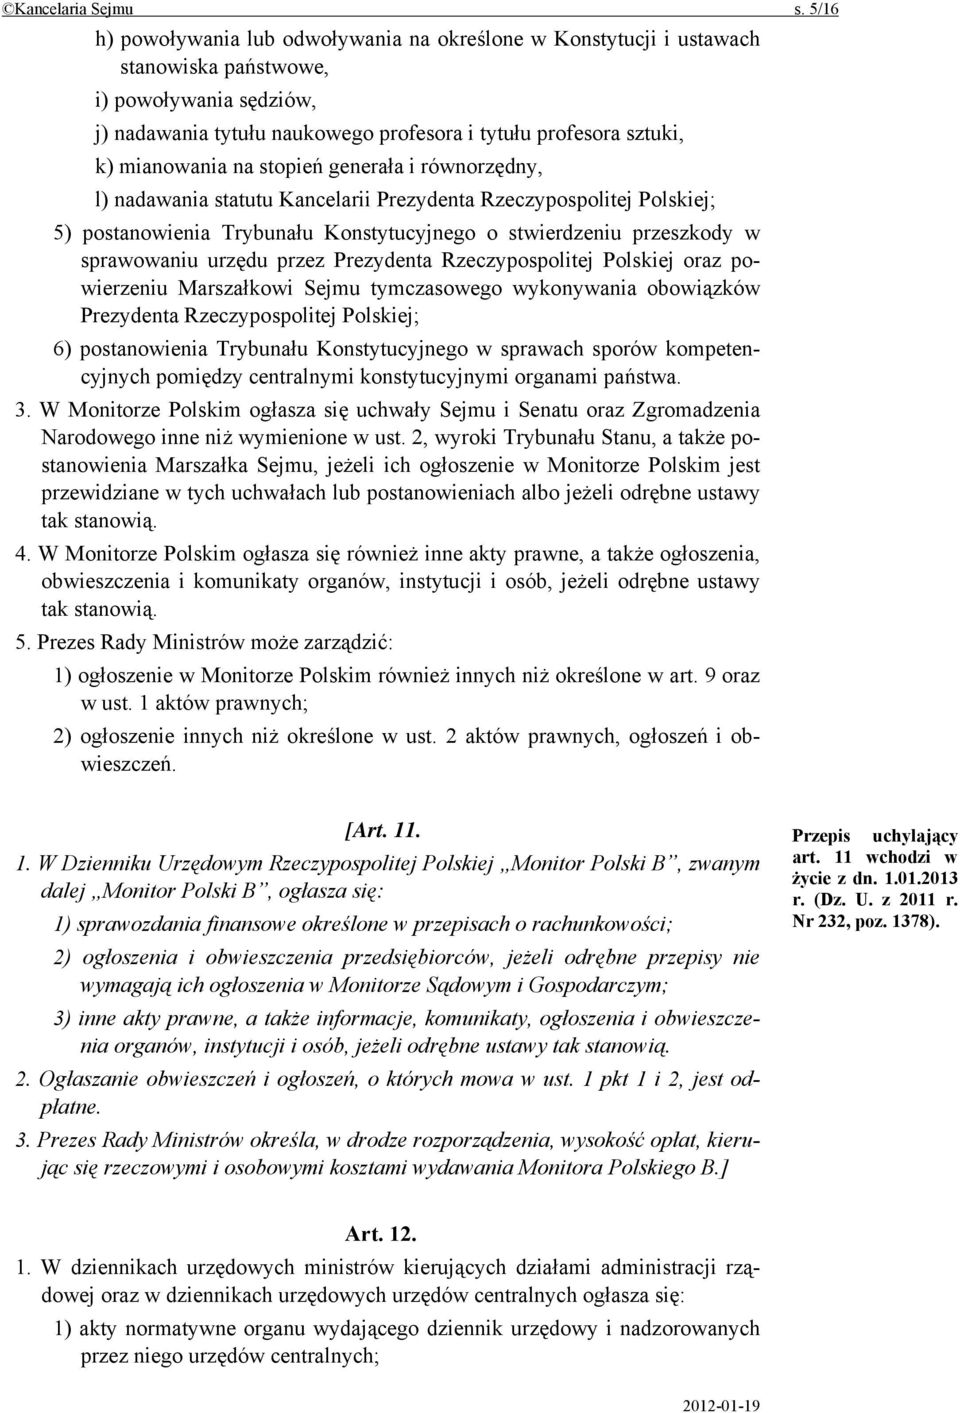 mianowania na stopień generała i równorzędny, l) nadawania statutu Kancelarii Prezydenta Rzeczypospolitej Polskiej; 5) postanowienia Trybunału Konstytucyjnego o stwierdzeniu przeszkody w sprawowaniu